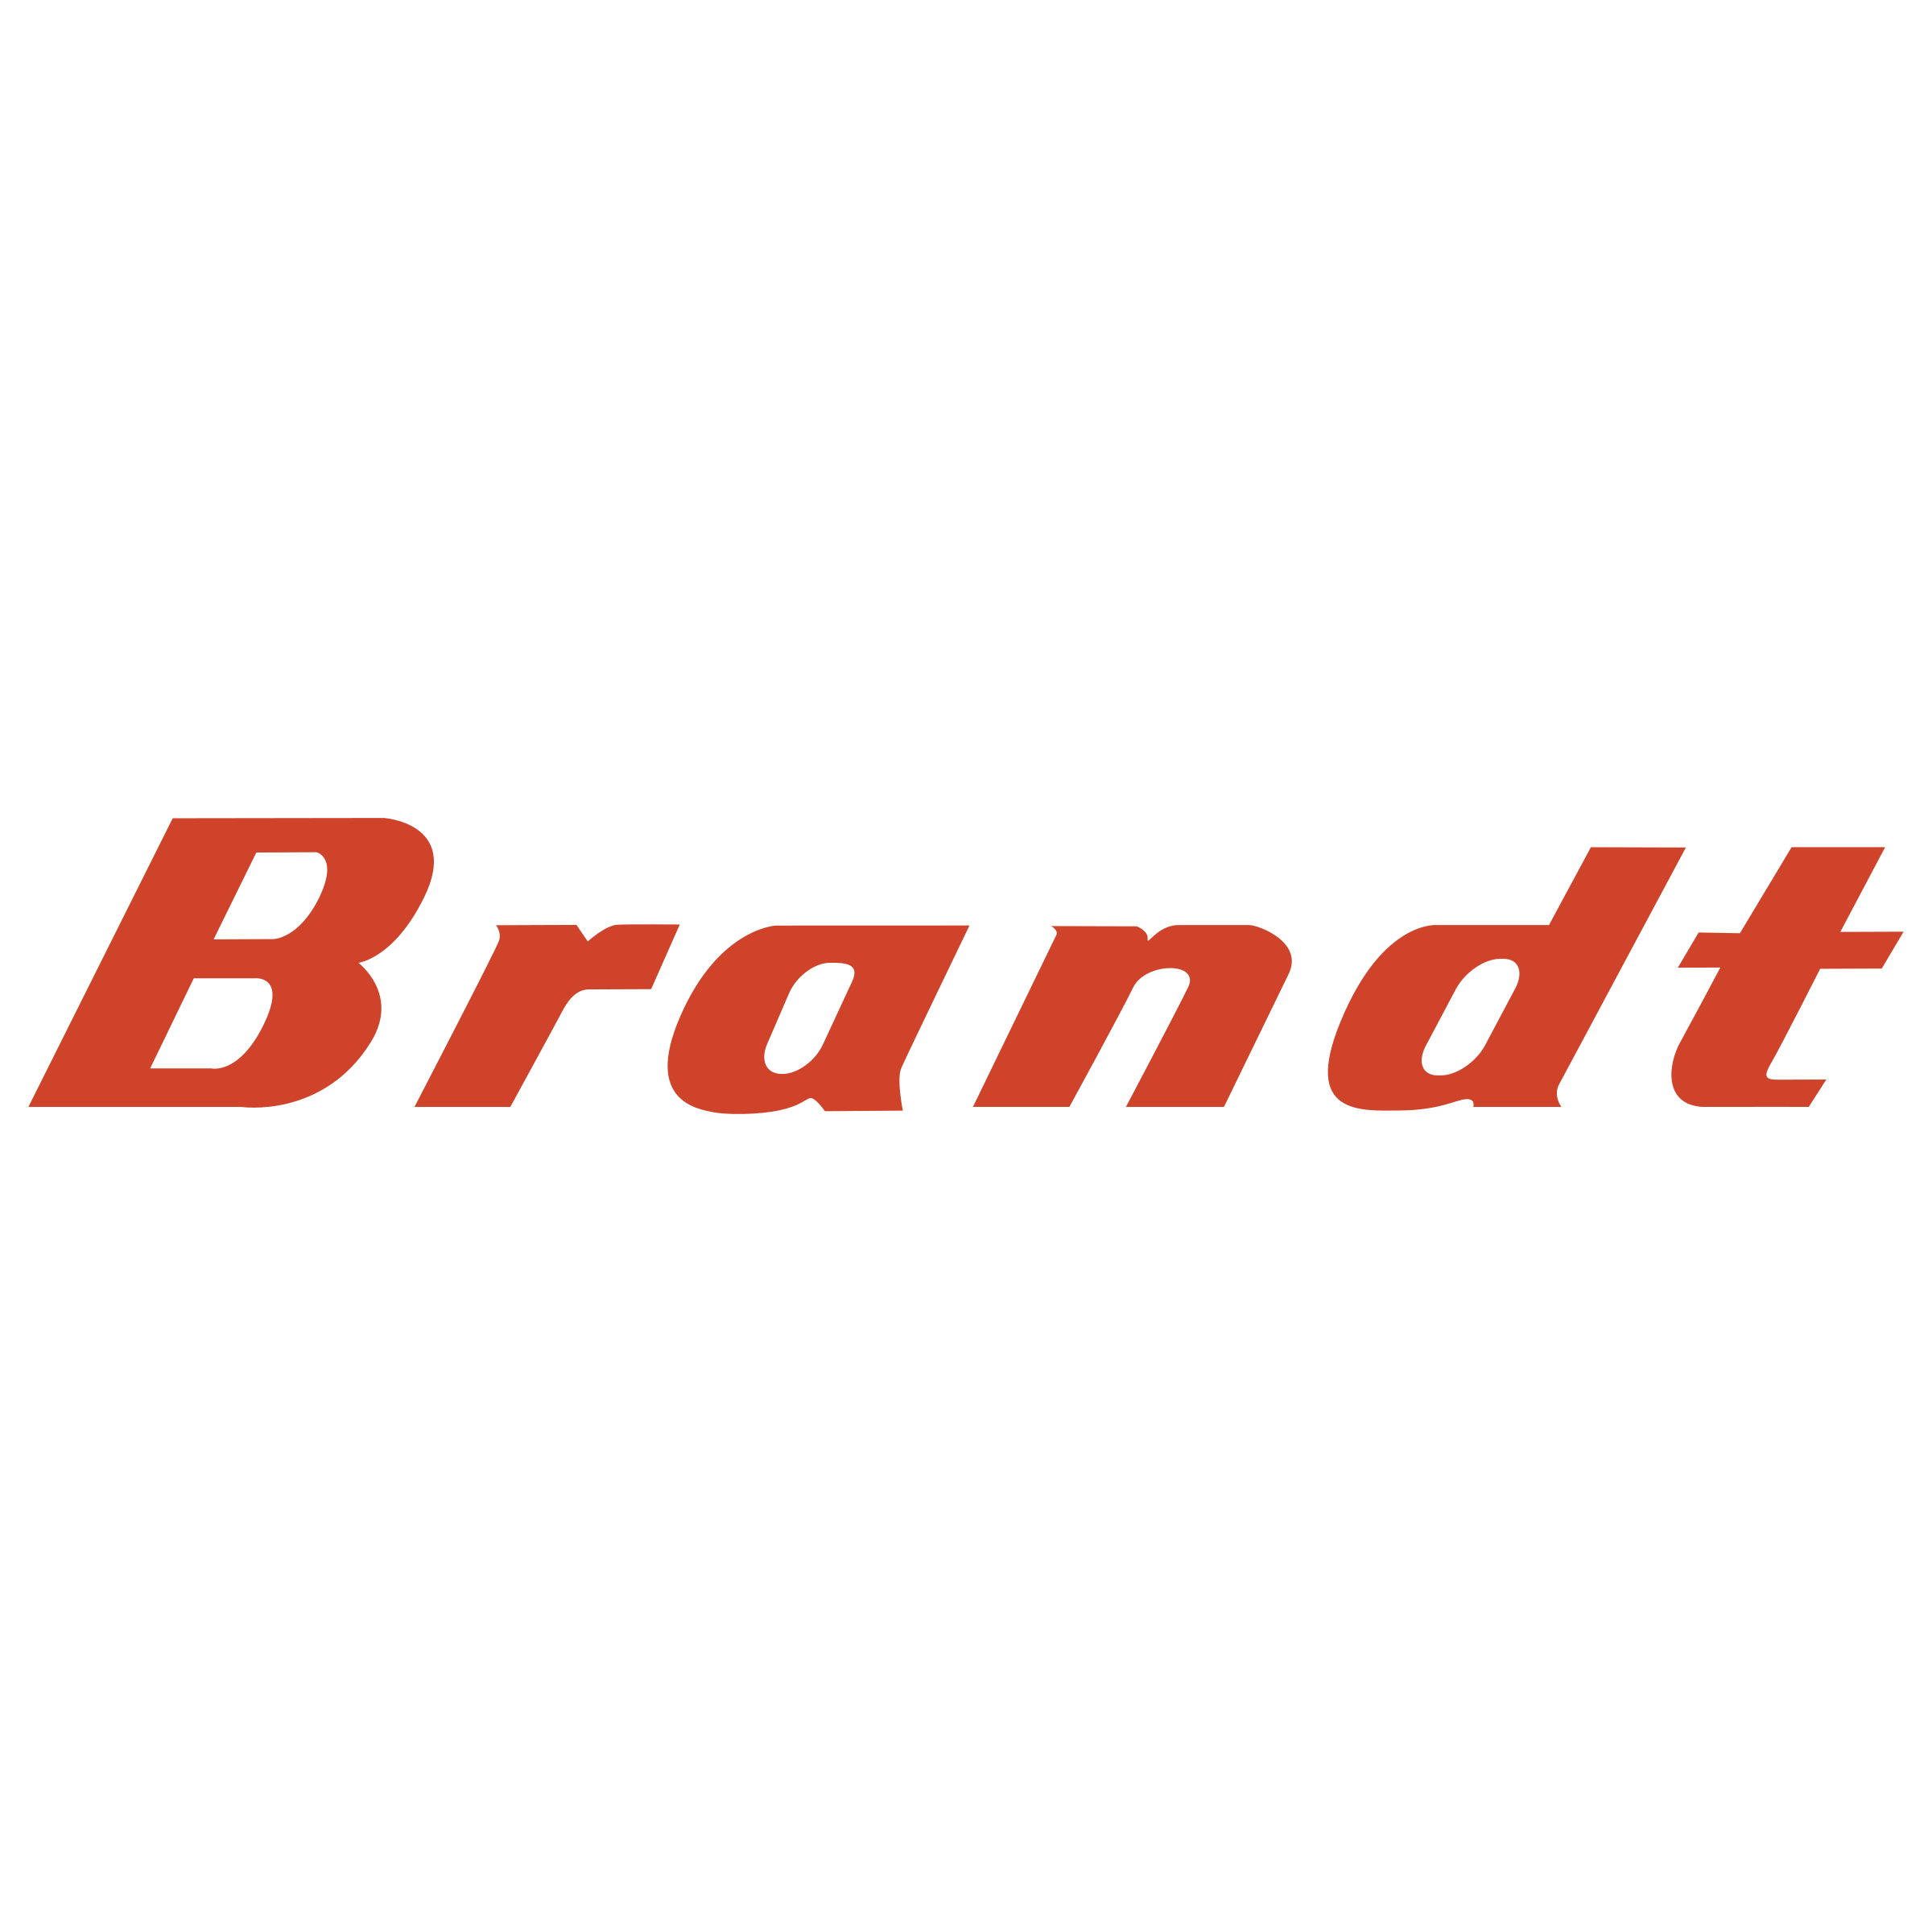 Brandt Logo - Brandt Logo PNG Transparent & SVG Vector - Freebie Supply